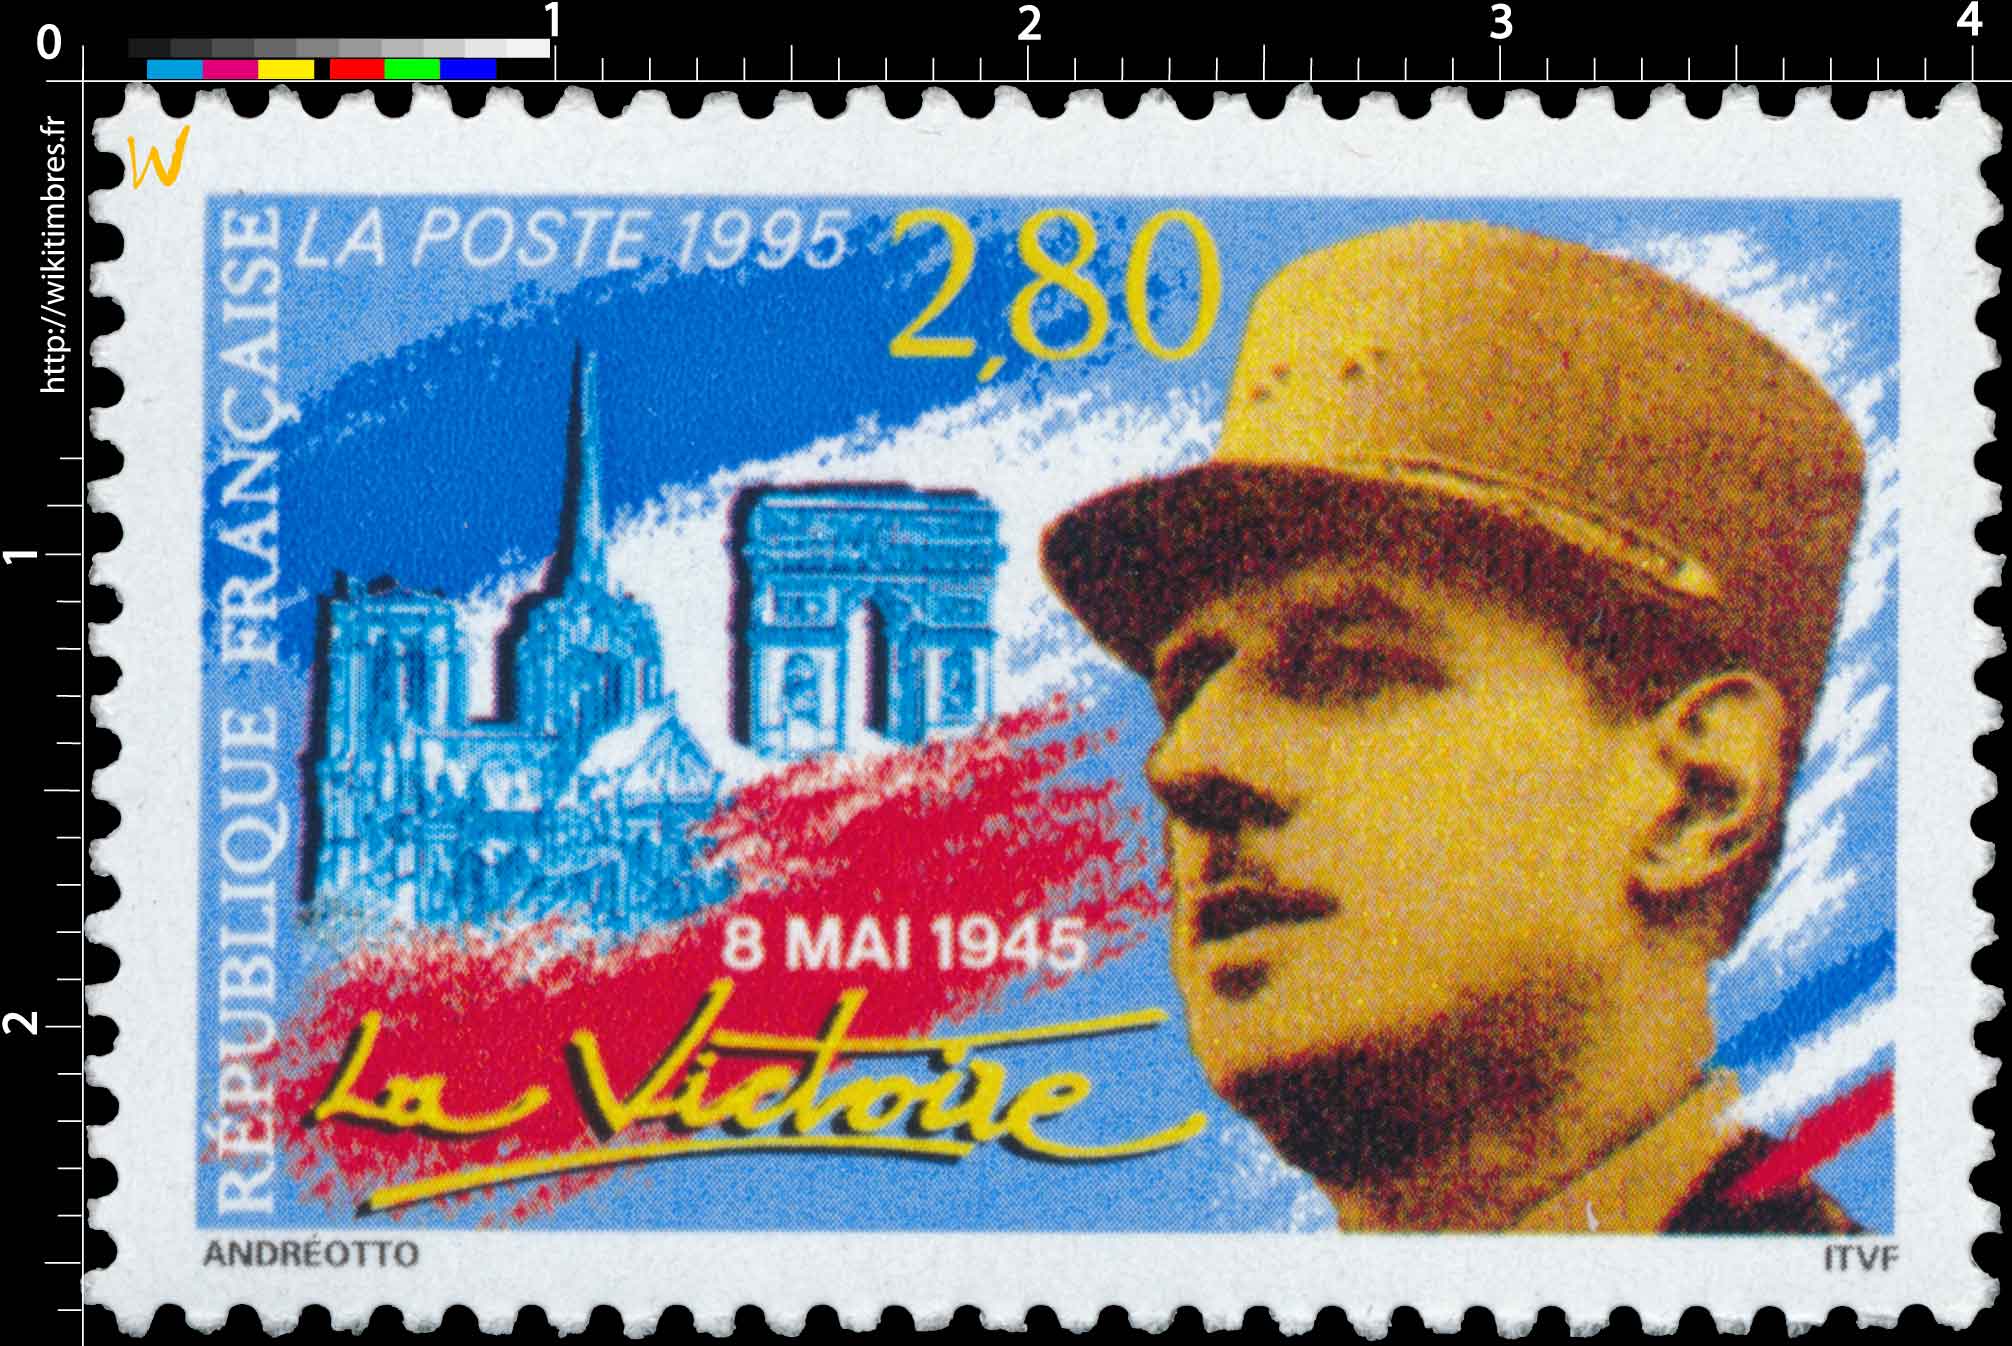 1995 8 MAI 1945 La Victoire